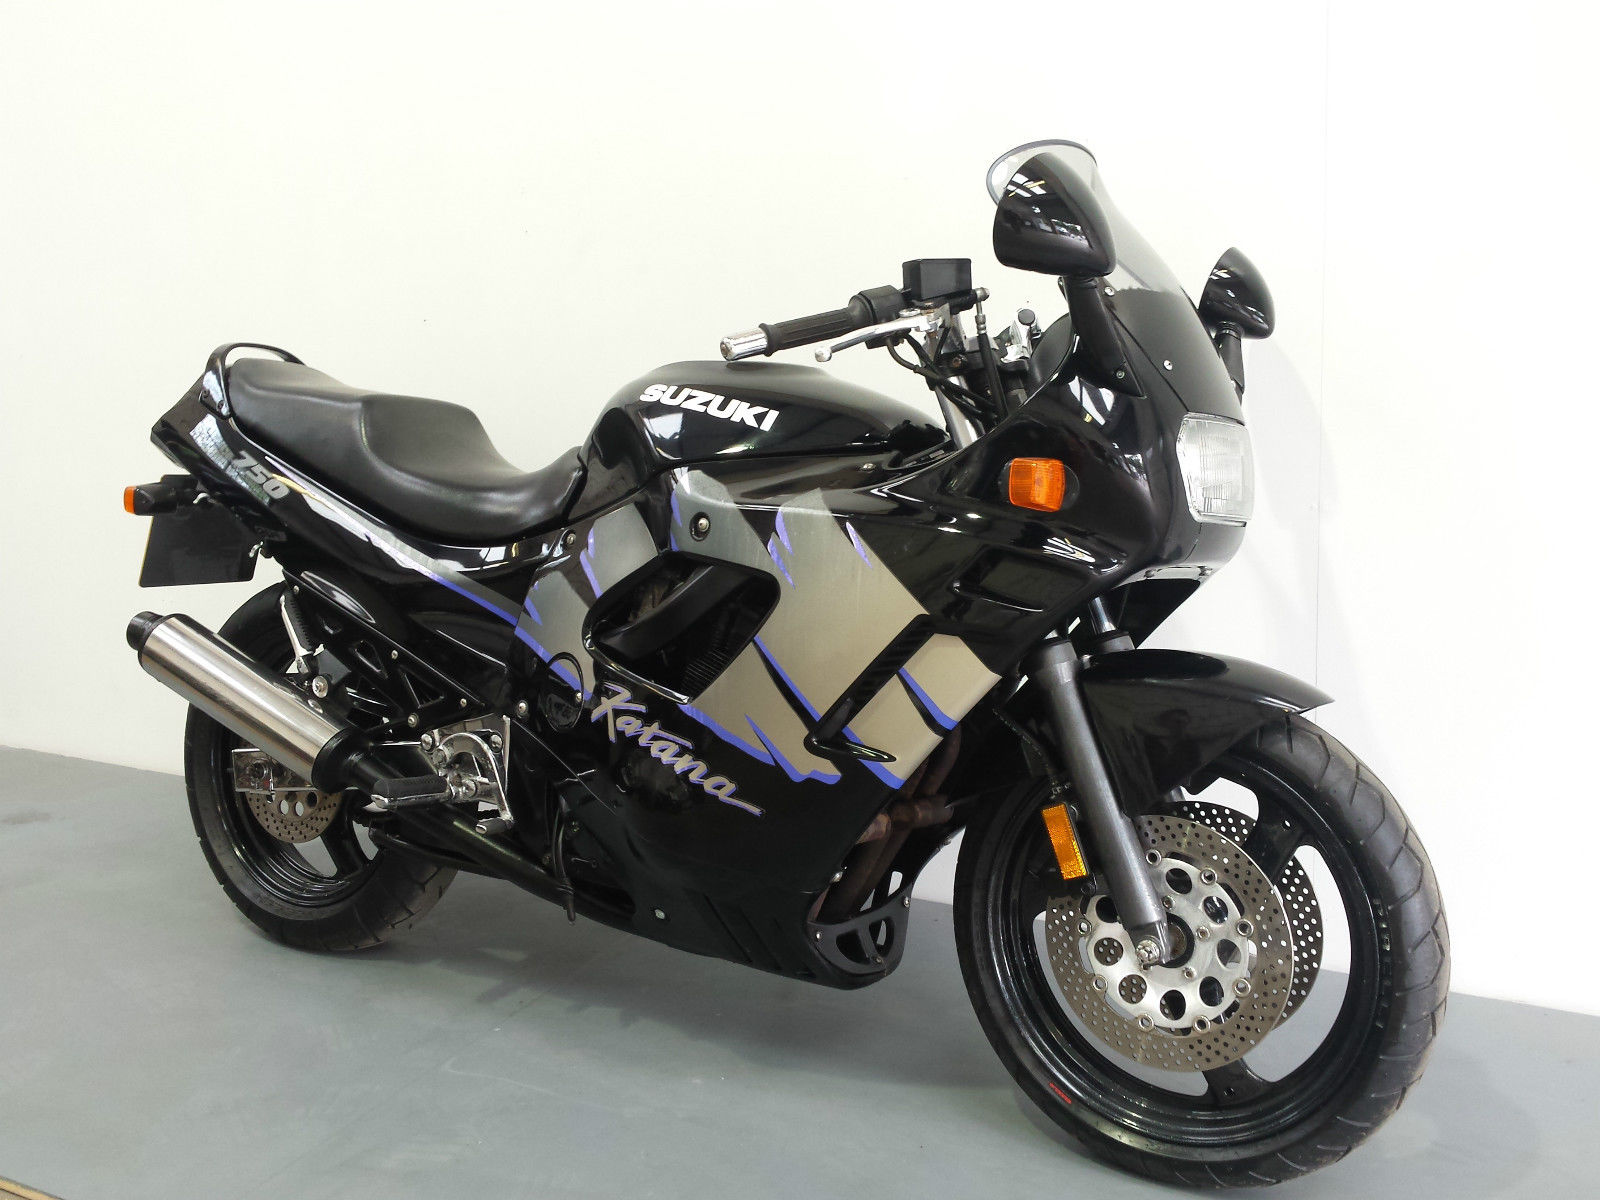 Мотоцикл gsx250f across (1992): технические характеристики, фото, видео